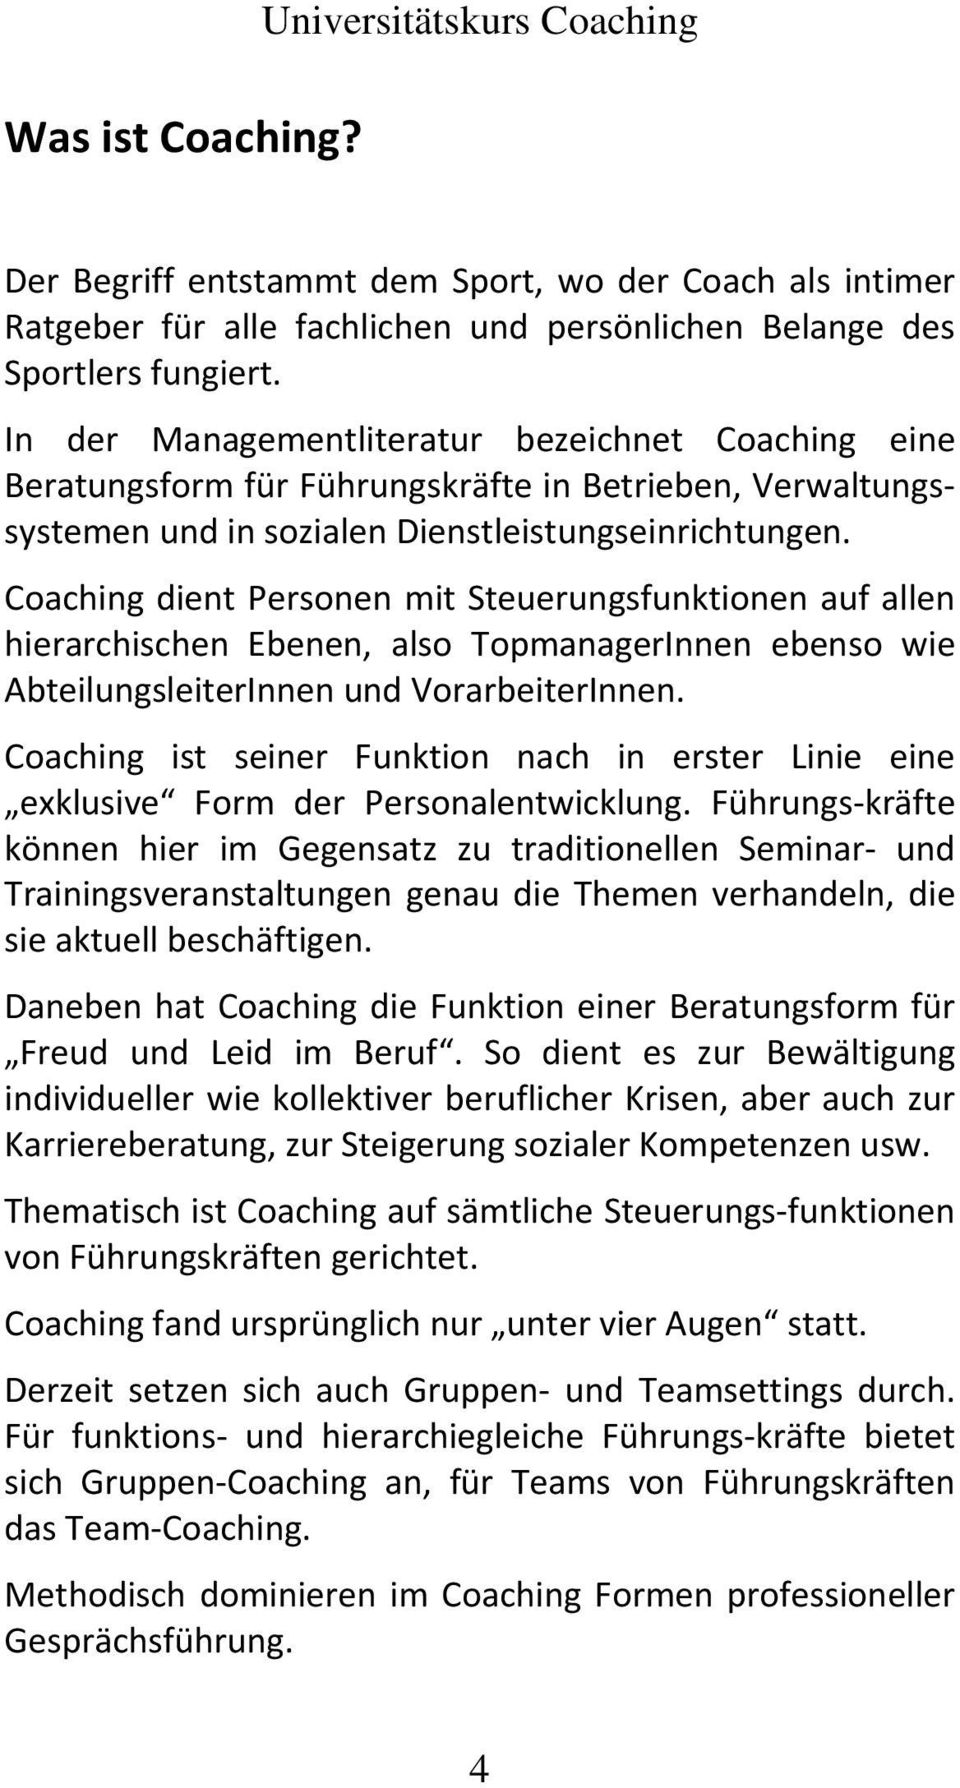 Coaching dient Personen mit Steuerungsfunktionen auf allen hierarchischen Ebenen, also TopmanagerInnen ebenso wie AbteilungsleiterInnen und VorarbeiterInnen.